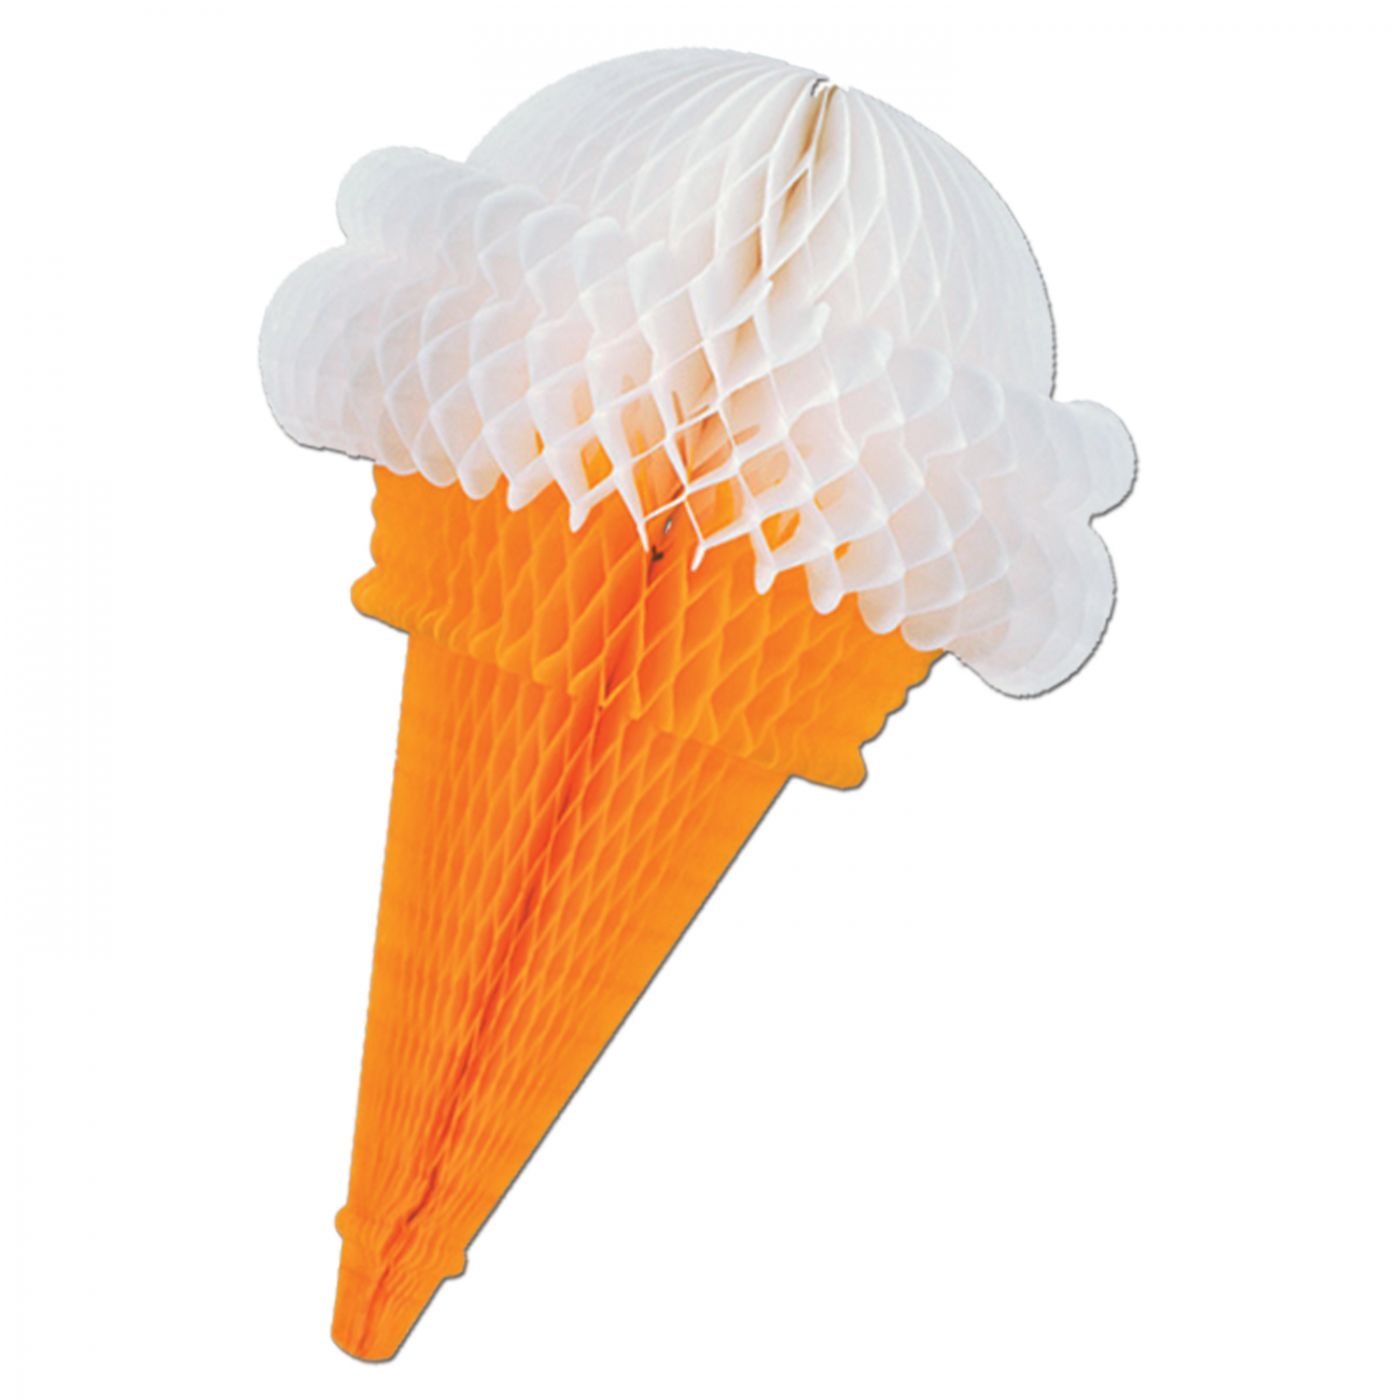 Tissue Ice Cream Cones image